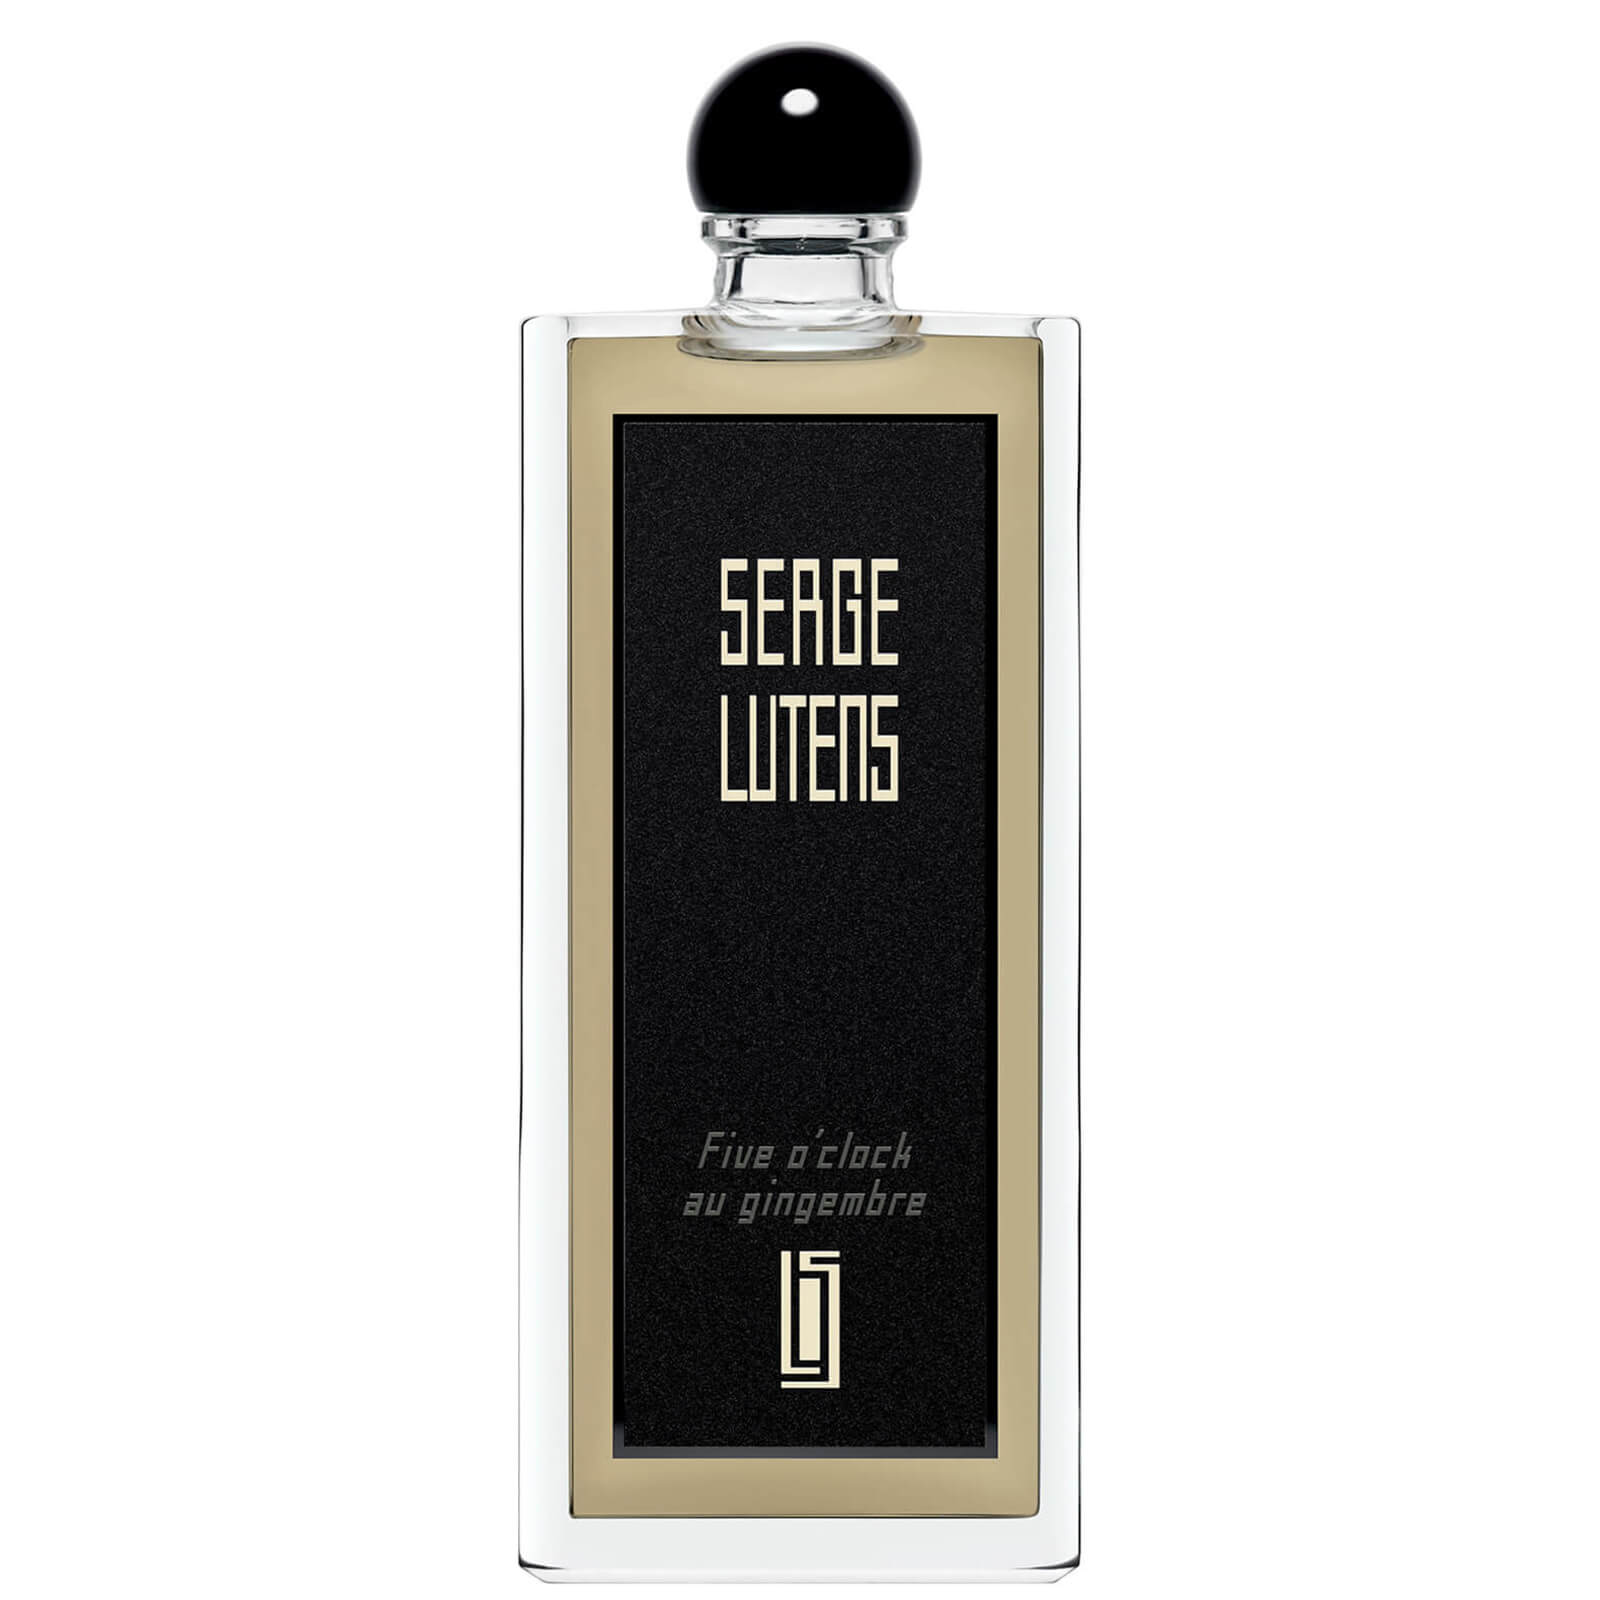 Photos - Women's Fragrance Serge Lutens Five o'clock au Gingembre Eau de Parfum - 50ml 36112342155 